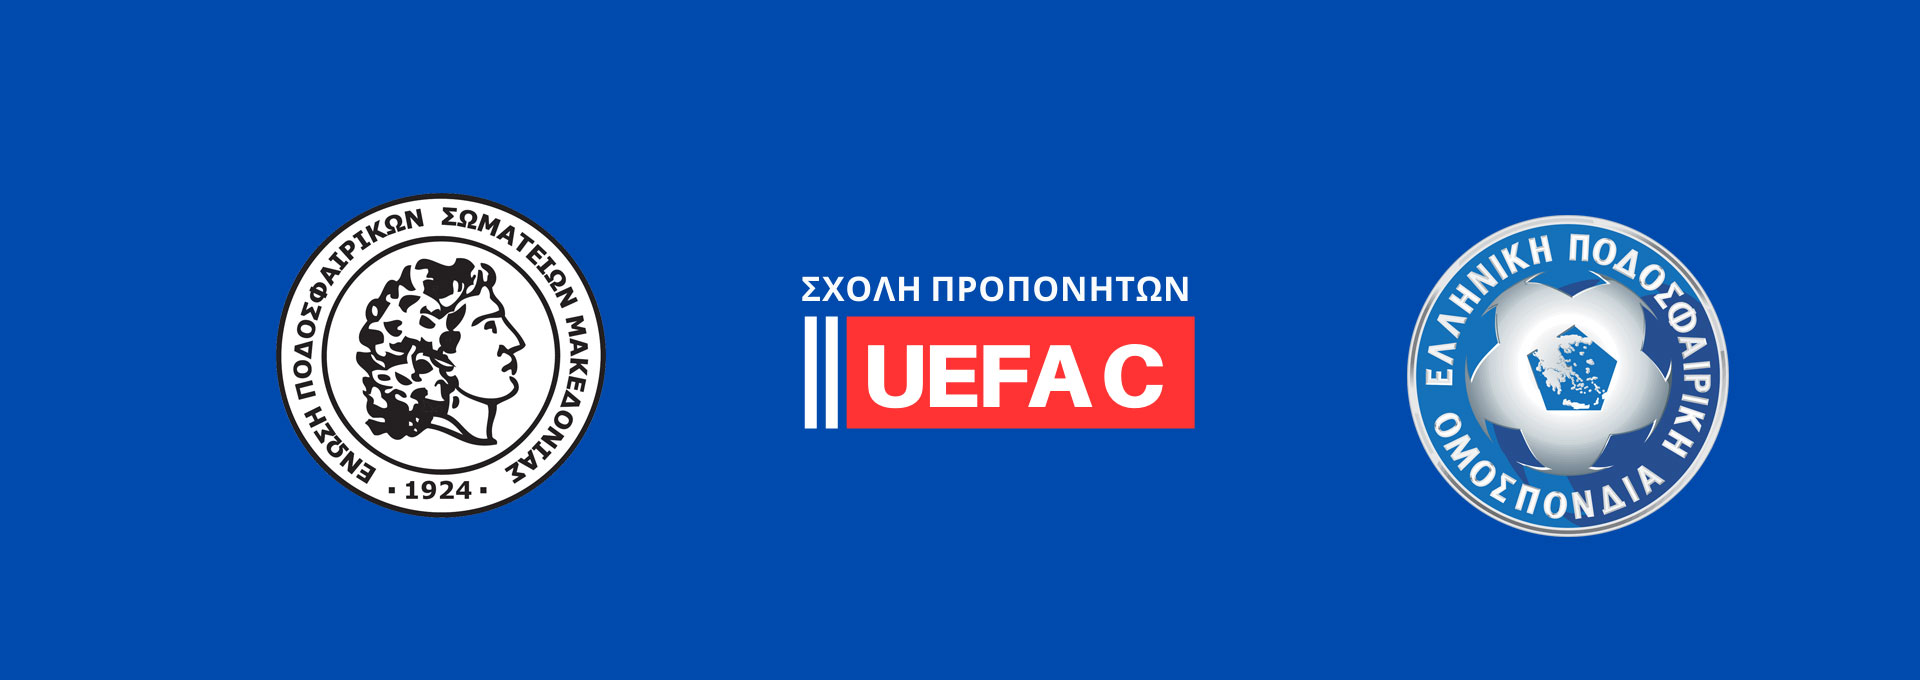 Σχολή Προπονητών UEFA C στην ΕΠΣΜ – Κατάθεση αιτήσεων έως τις 22.8.2022